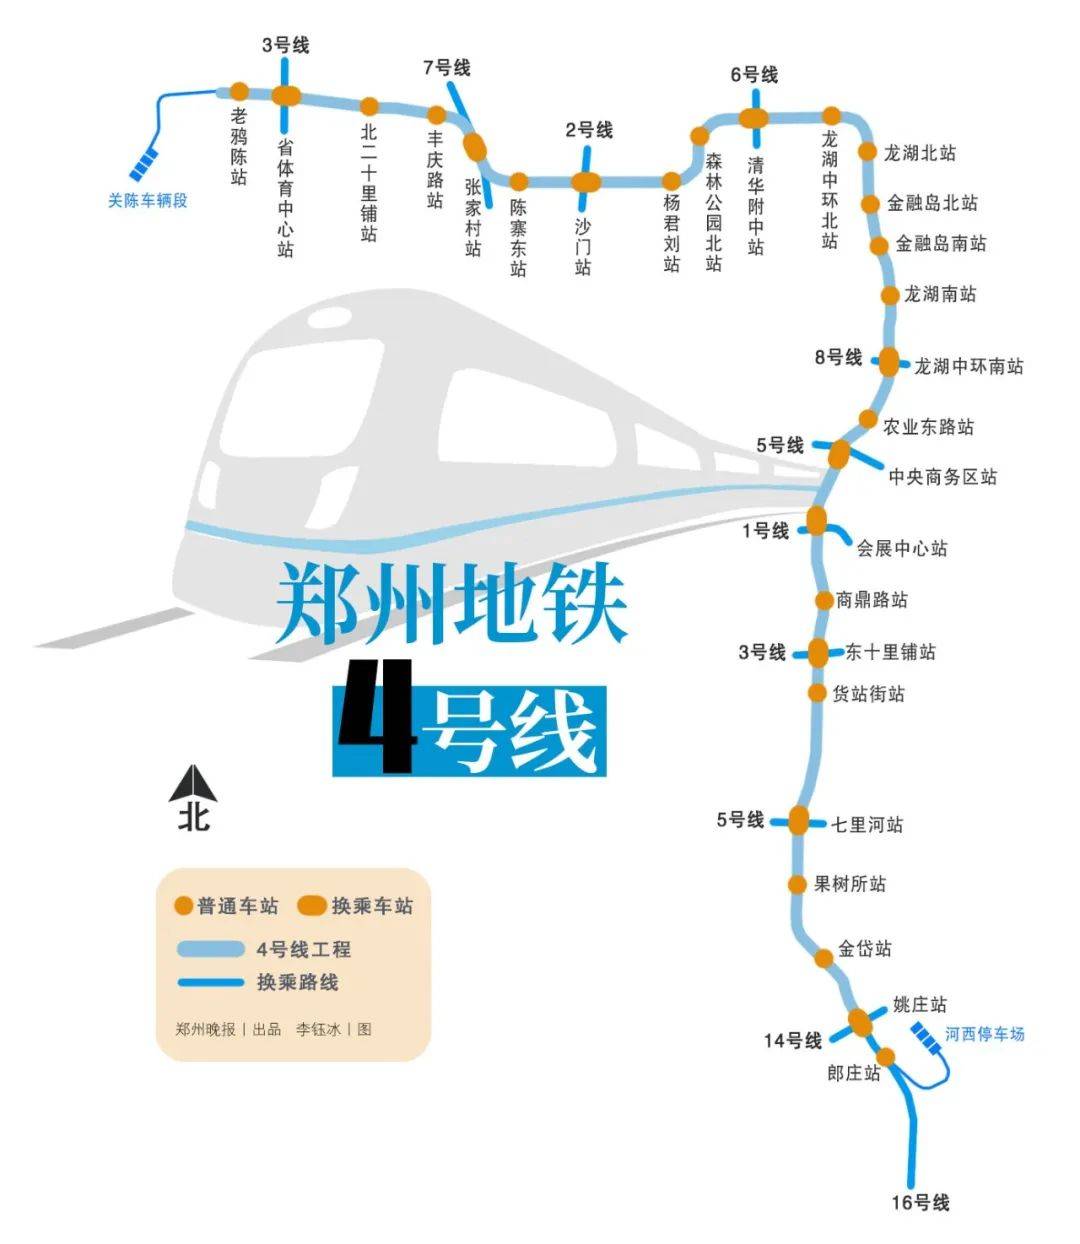 今起,郑州地铁3号线一期,4号线初期开通载客!河南3条高速同时开通!